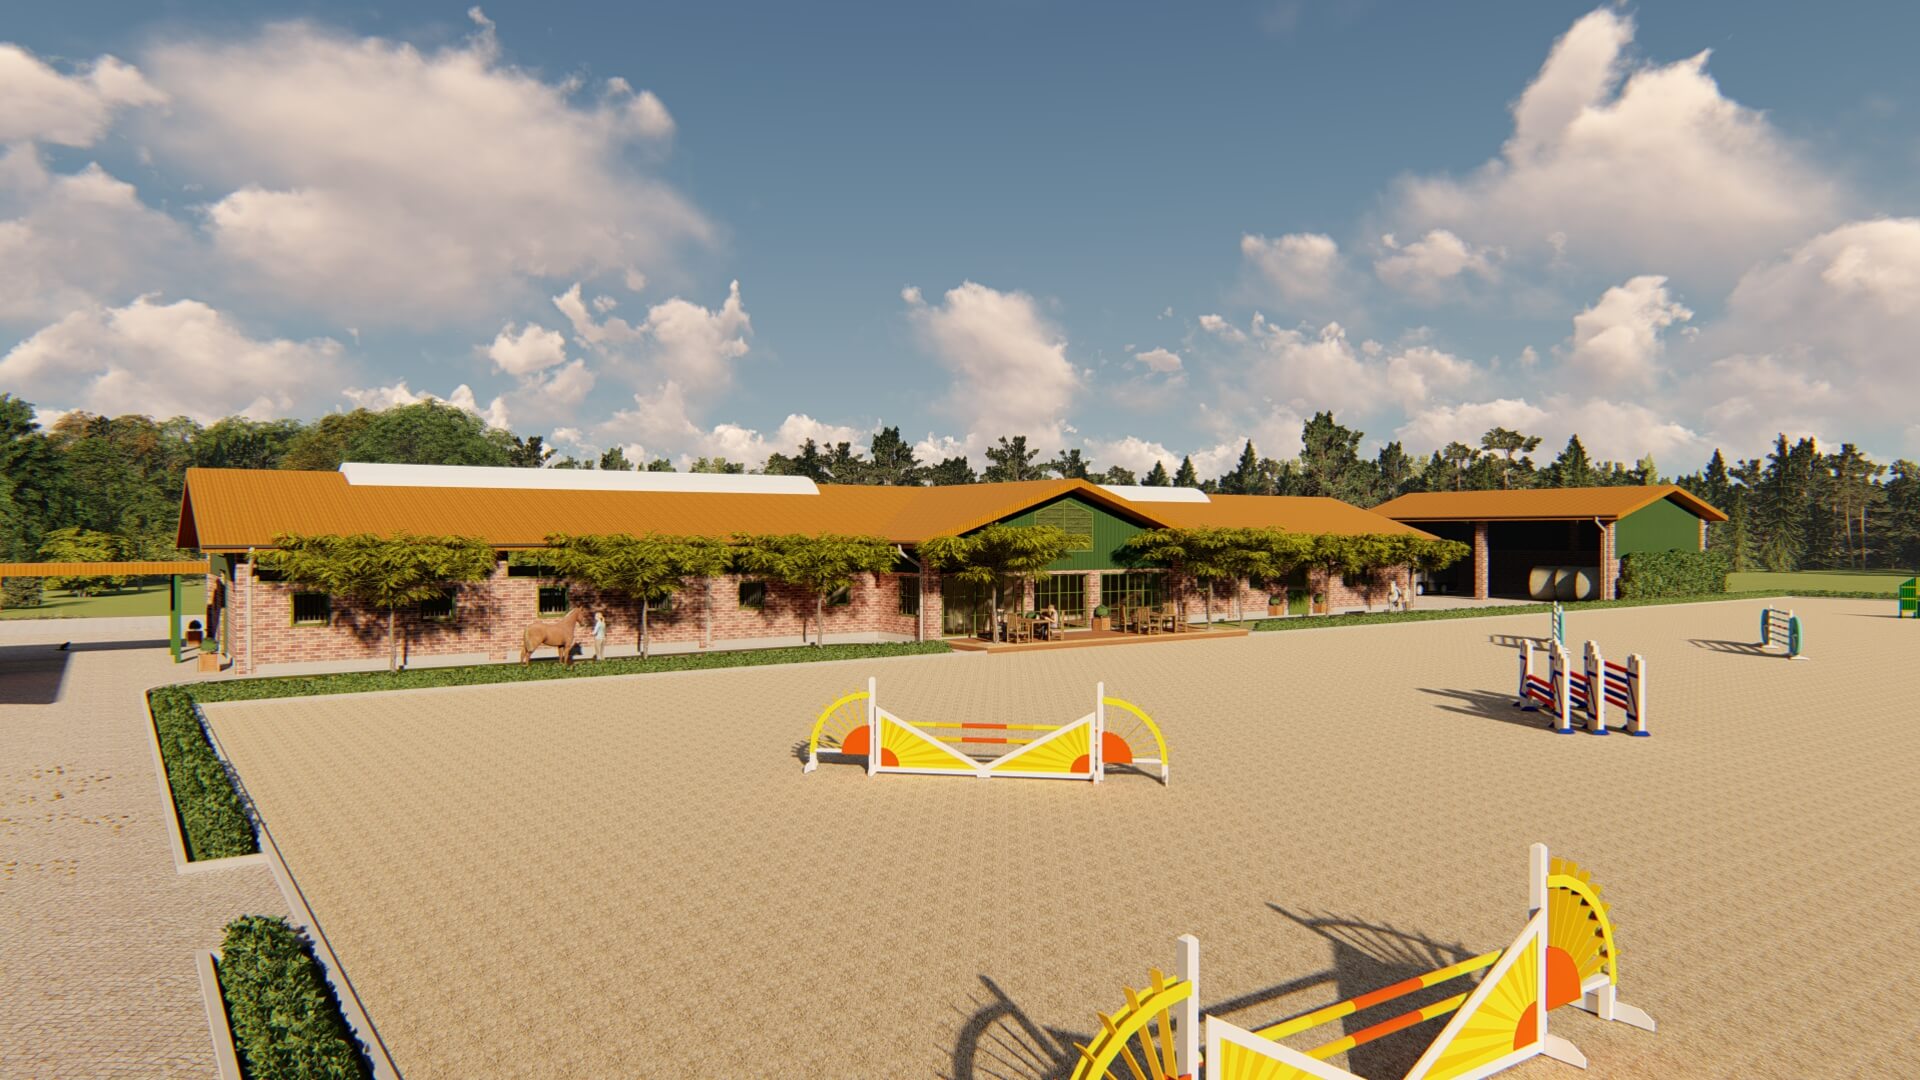 3D-Visualisierung eines ländlichen Reitstalls mit angeschlossenem Außenreitplatz und farbenfrohen Springhindernissen, gestaltet von EQUUS DESIGN PLANUNG unter blauem Himmel.